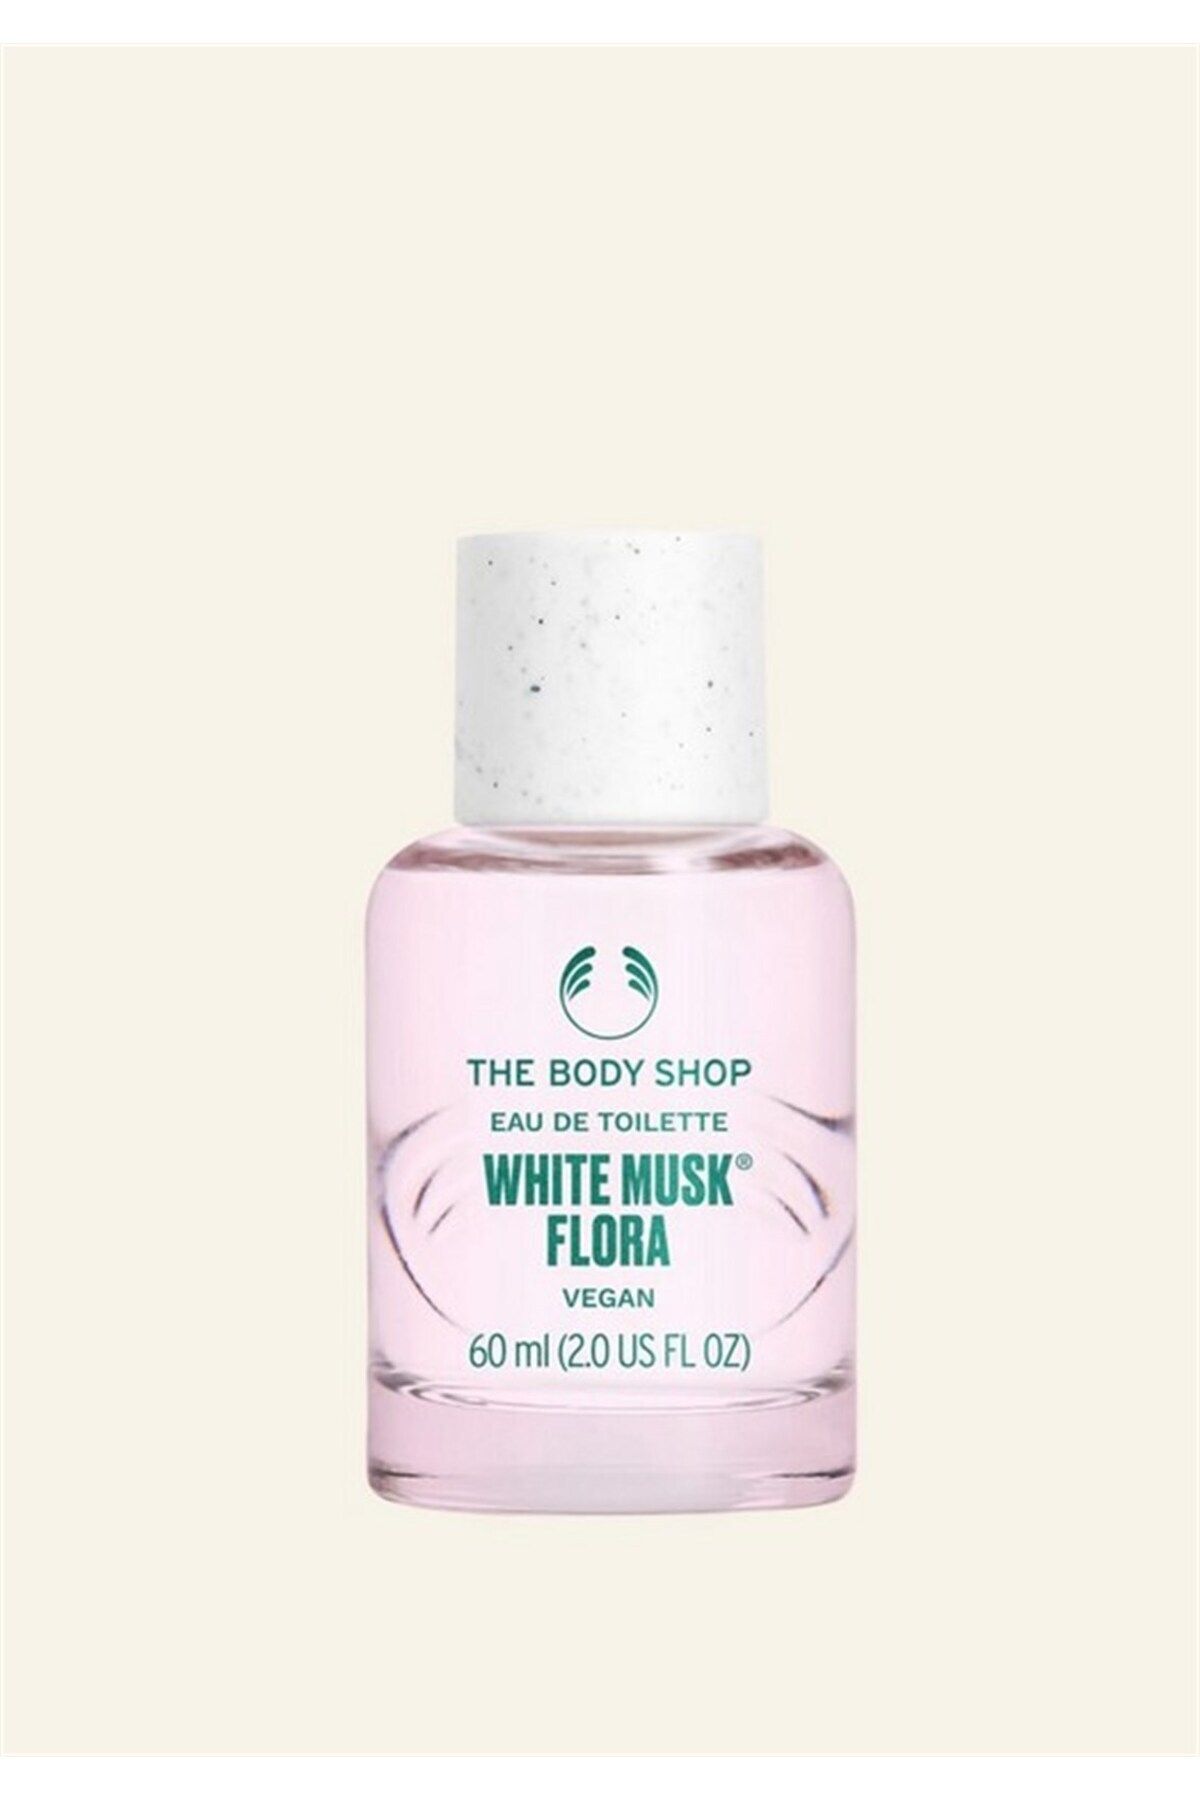 THE BODY SHOP White Musk® Flora Eau De Toilette 60 ml